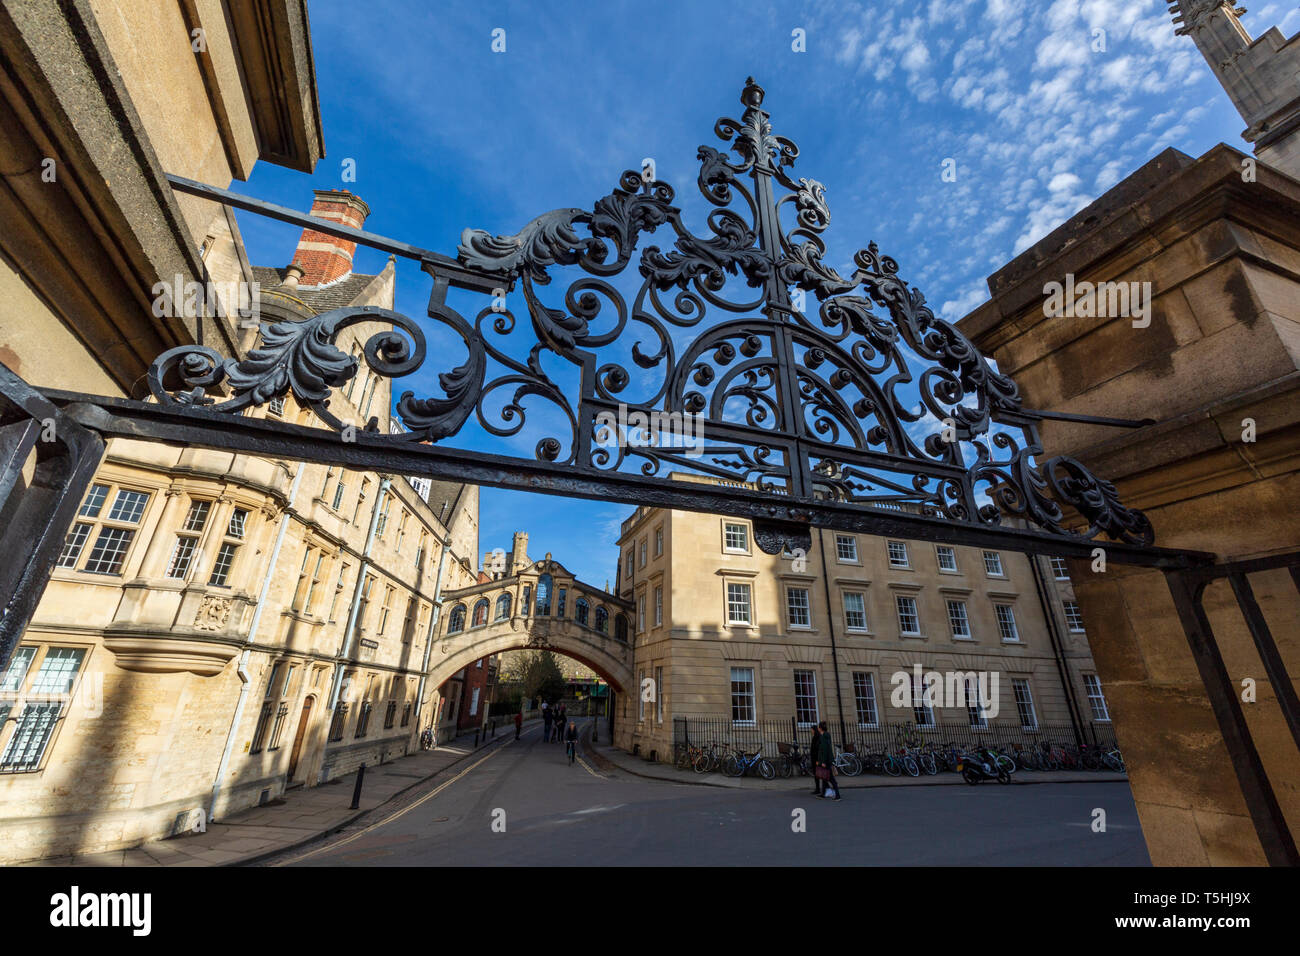 Hertford Bridge through the Iron gates to the Bodleian Library at Oxford University, England Stock Photo